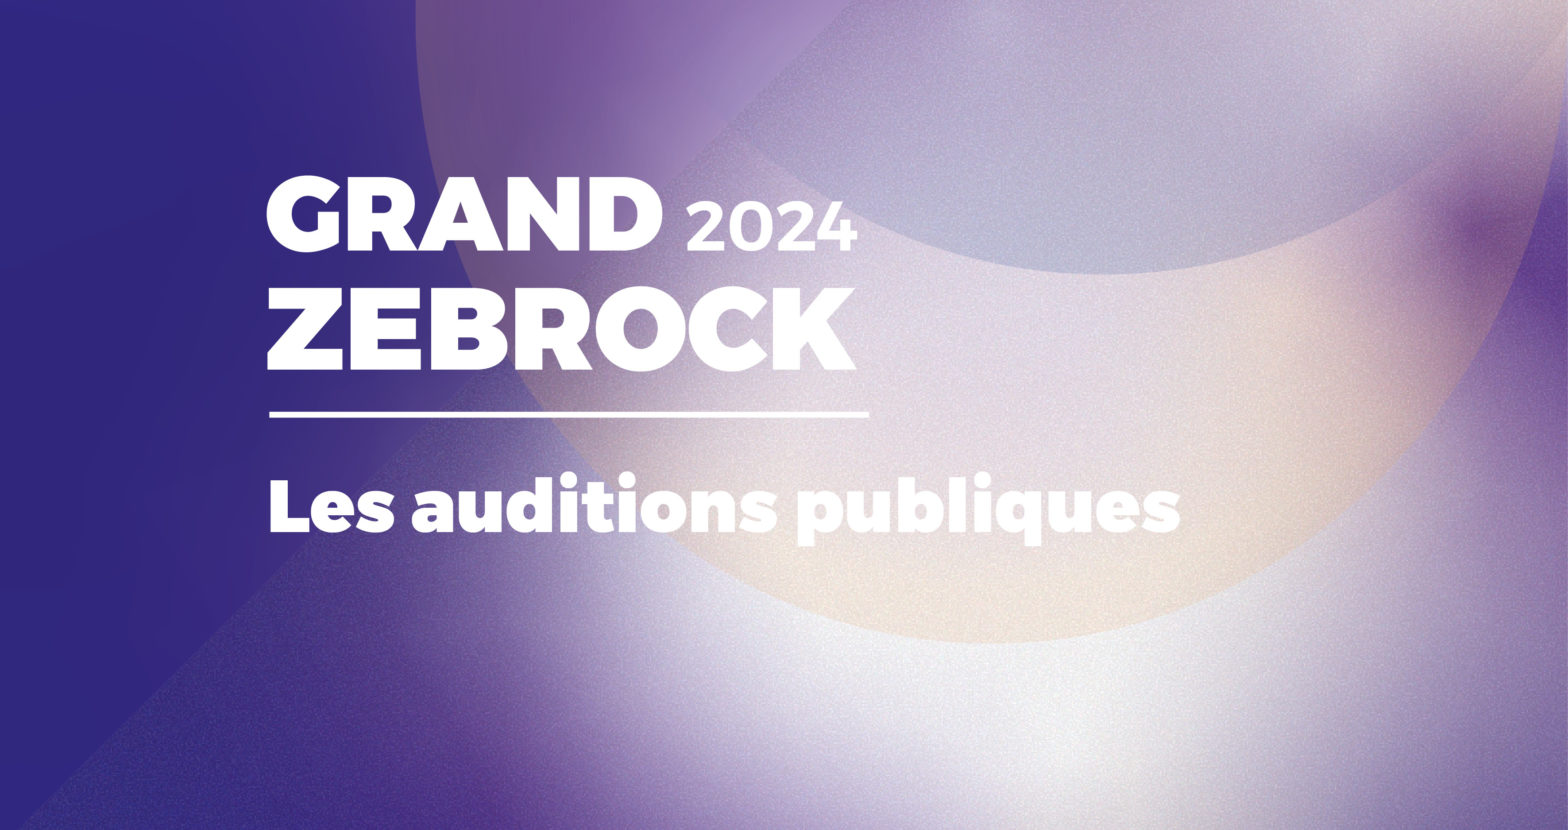 Grand Zebrock 2024: Auditions publiques, le programme